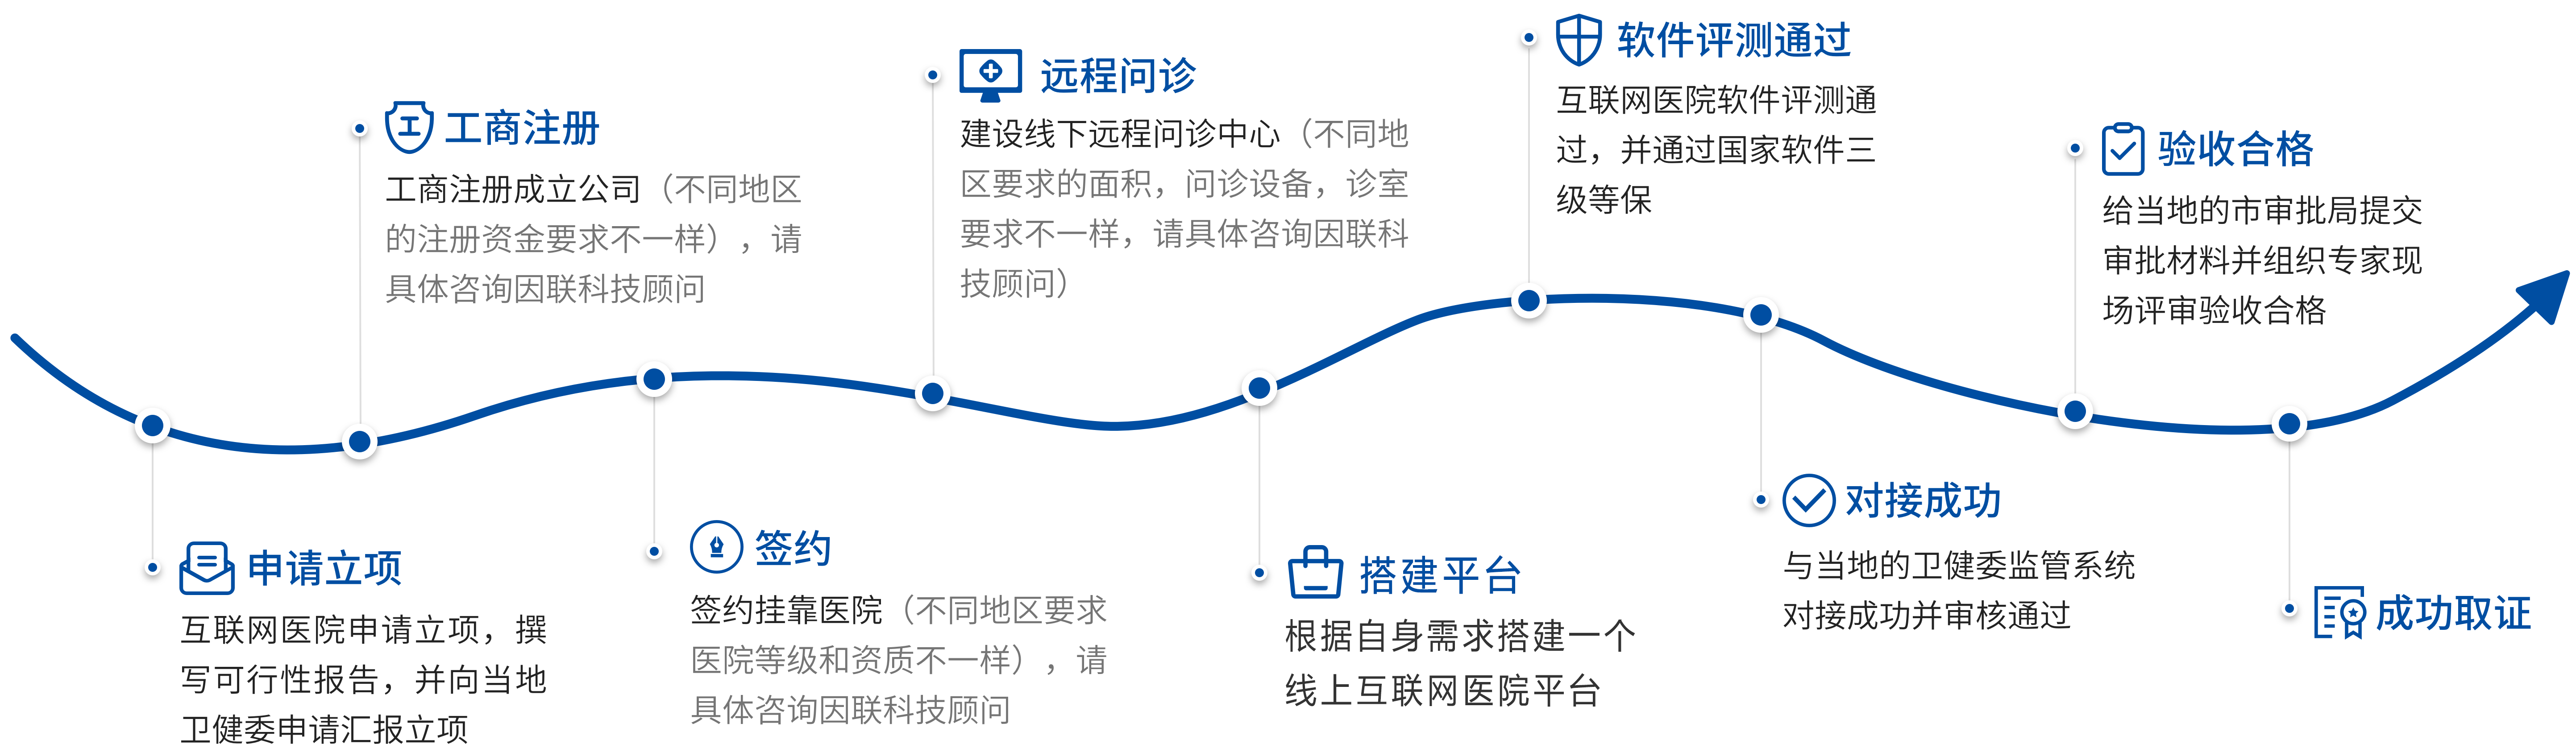 广东省互联网医院牌照代办中介机构合作流程图